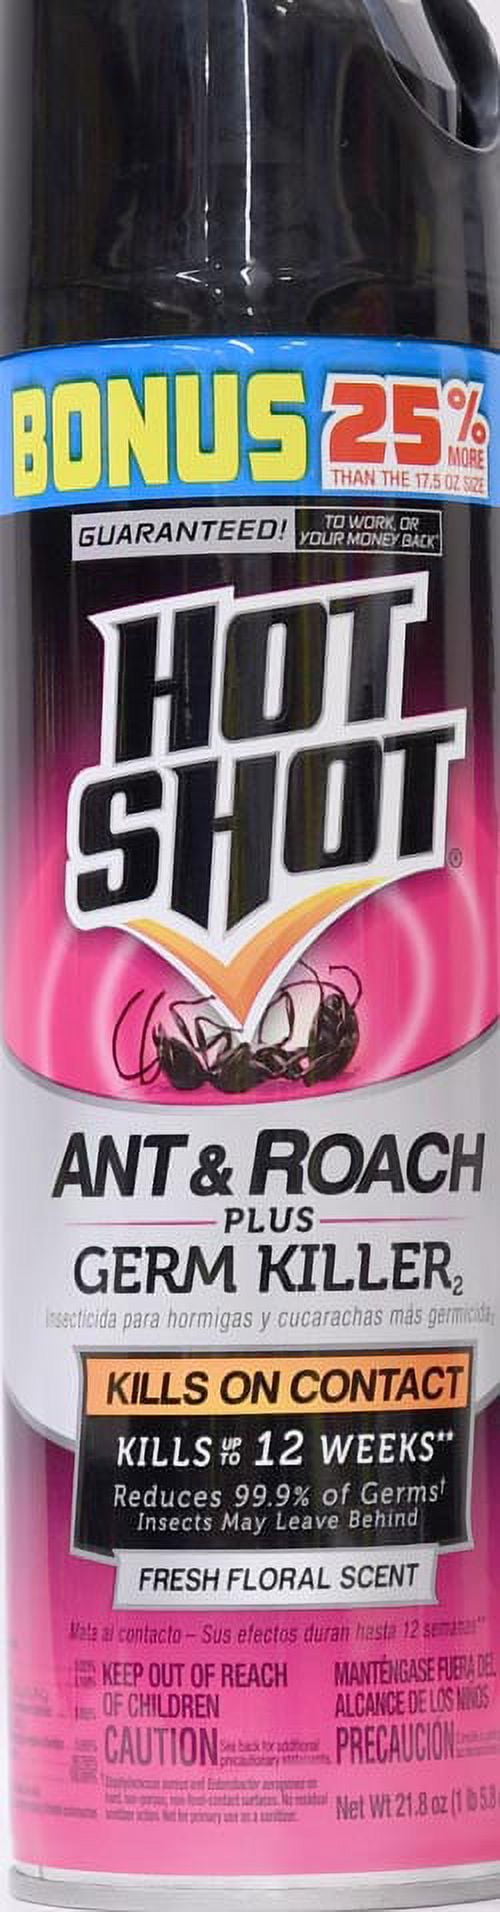 Hot Shot Ant & Roach Plus Germ Killer Commercial 